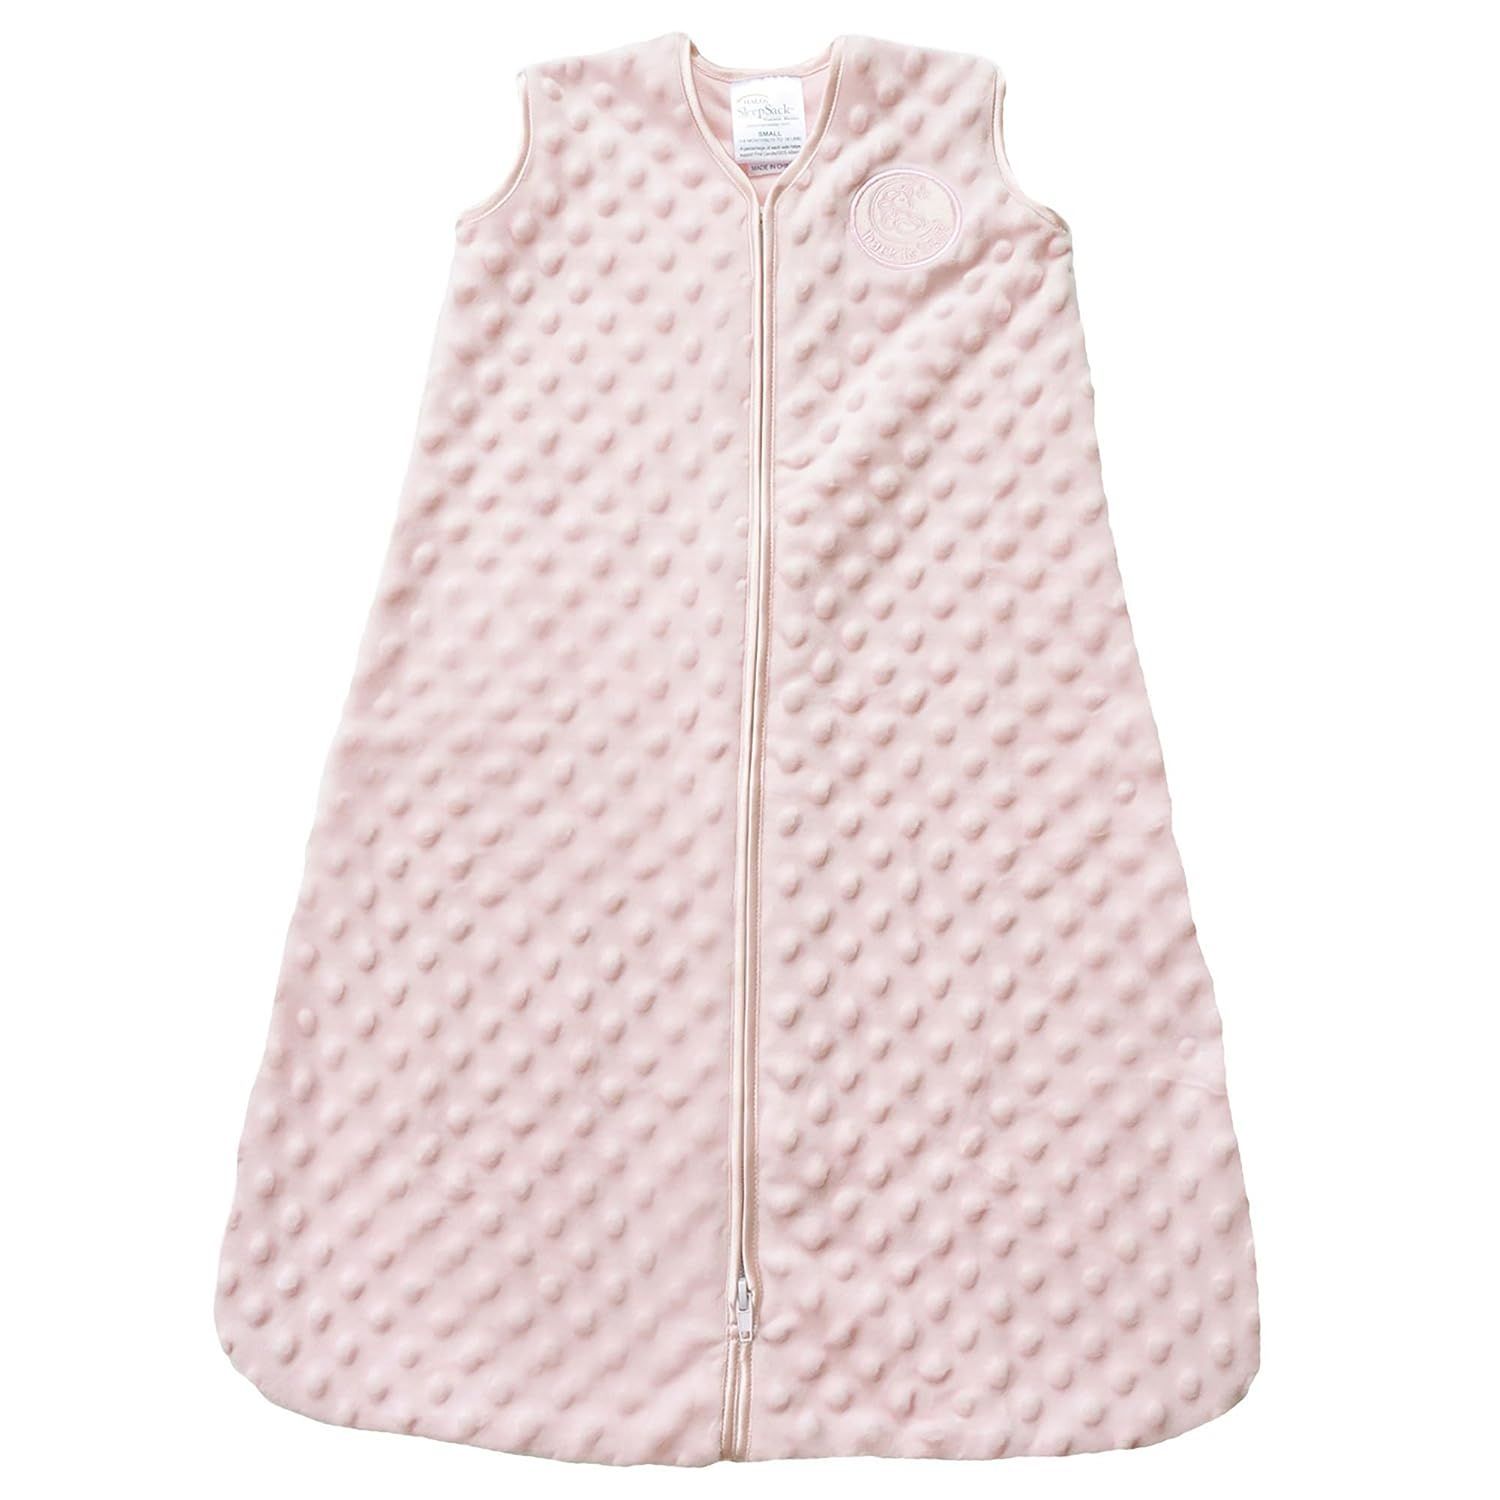 HALO Sleepsack Plush Dot Velboa Wearable Blanket, Pink, Medium | Amazon (US)